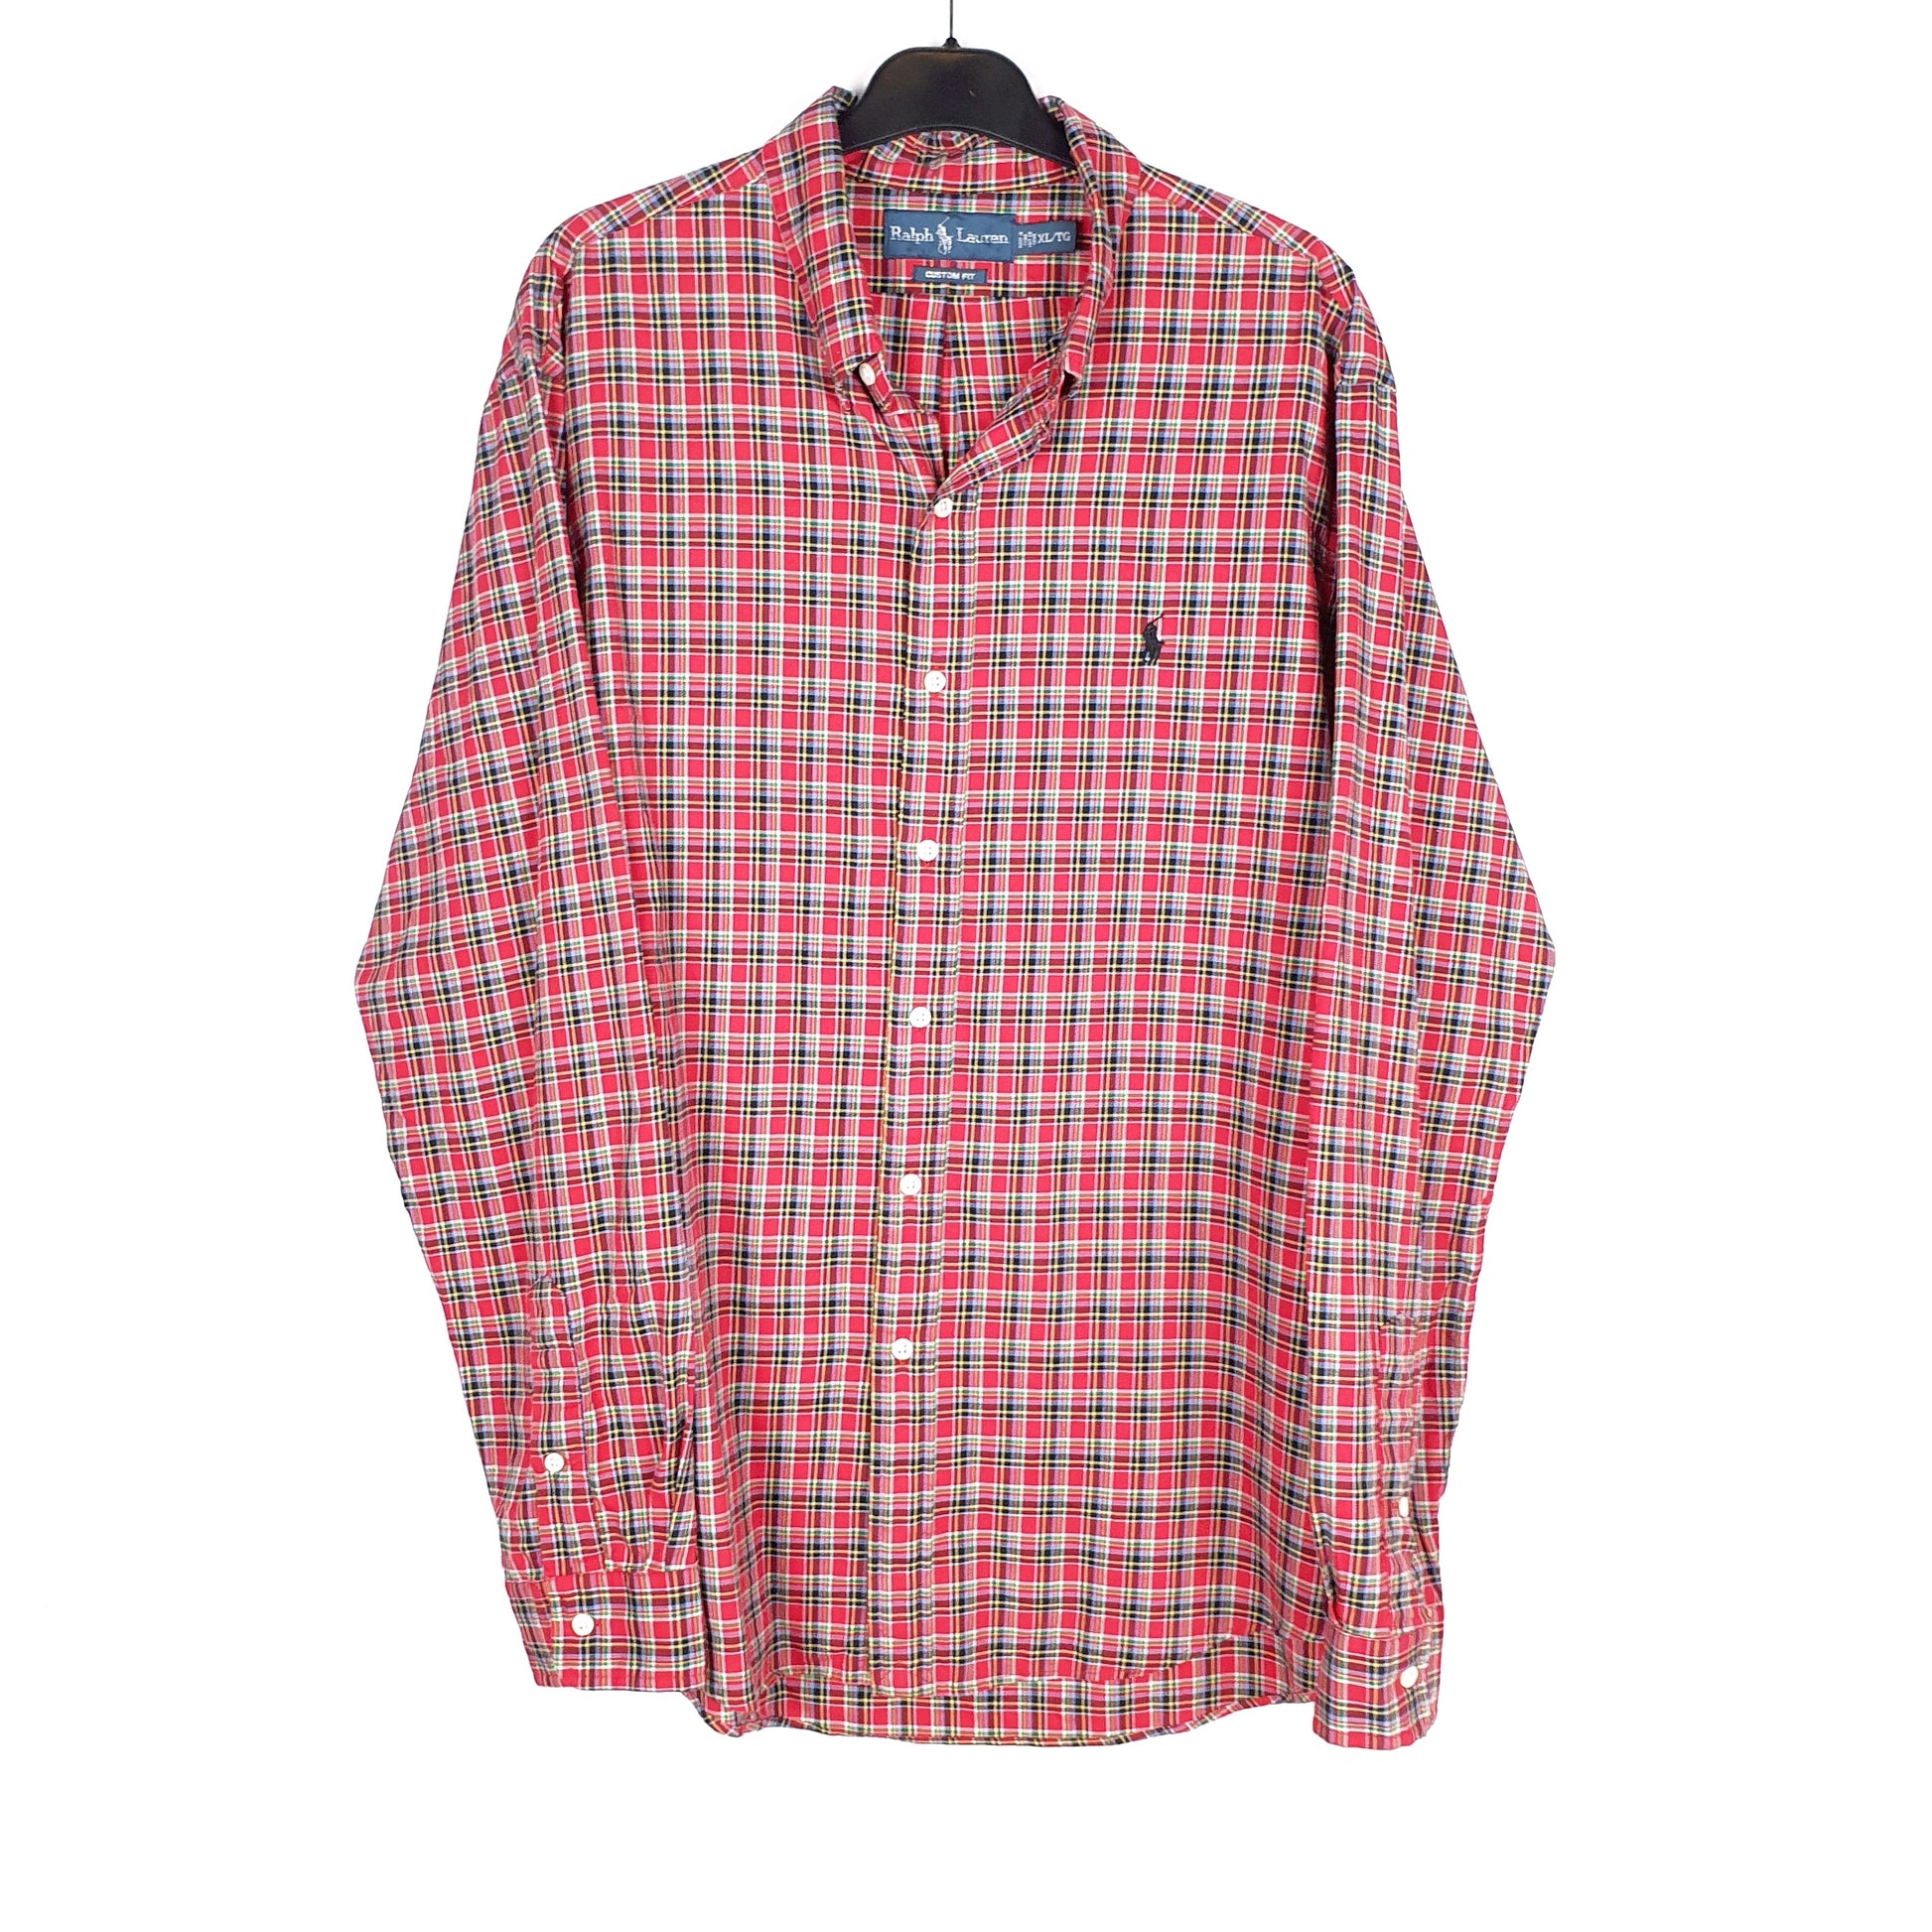 Red Polo Ralph Lauren Long Sleeve Shirt